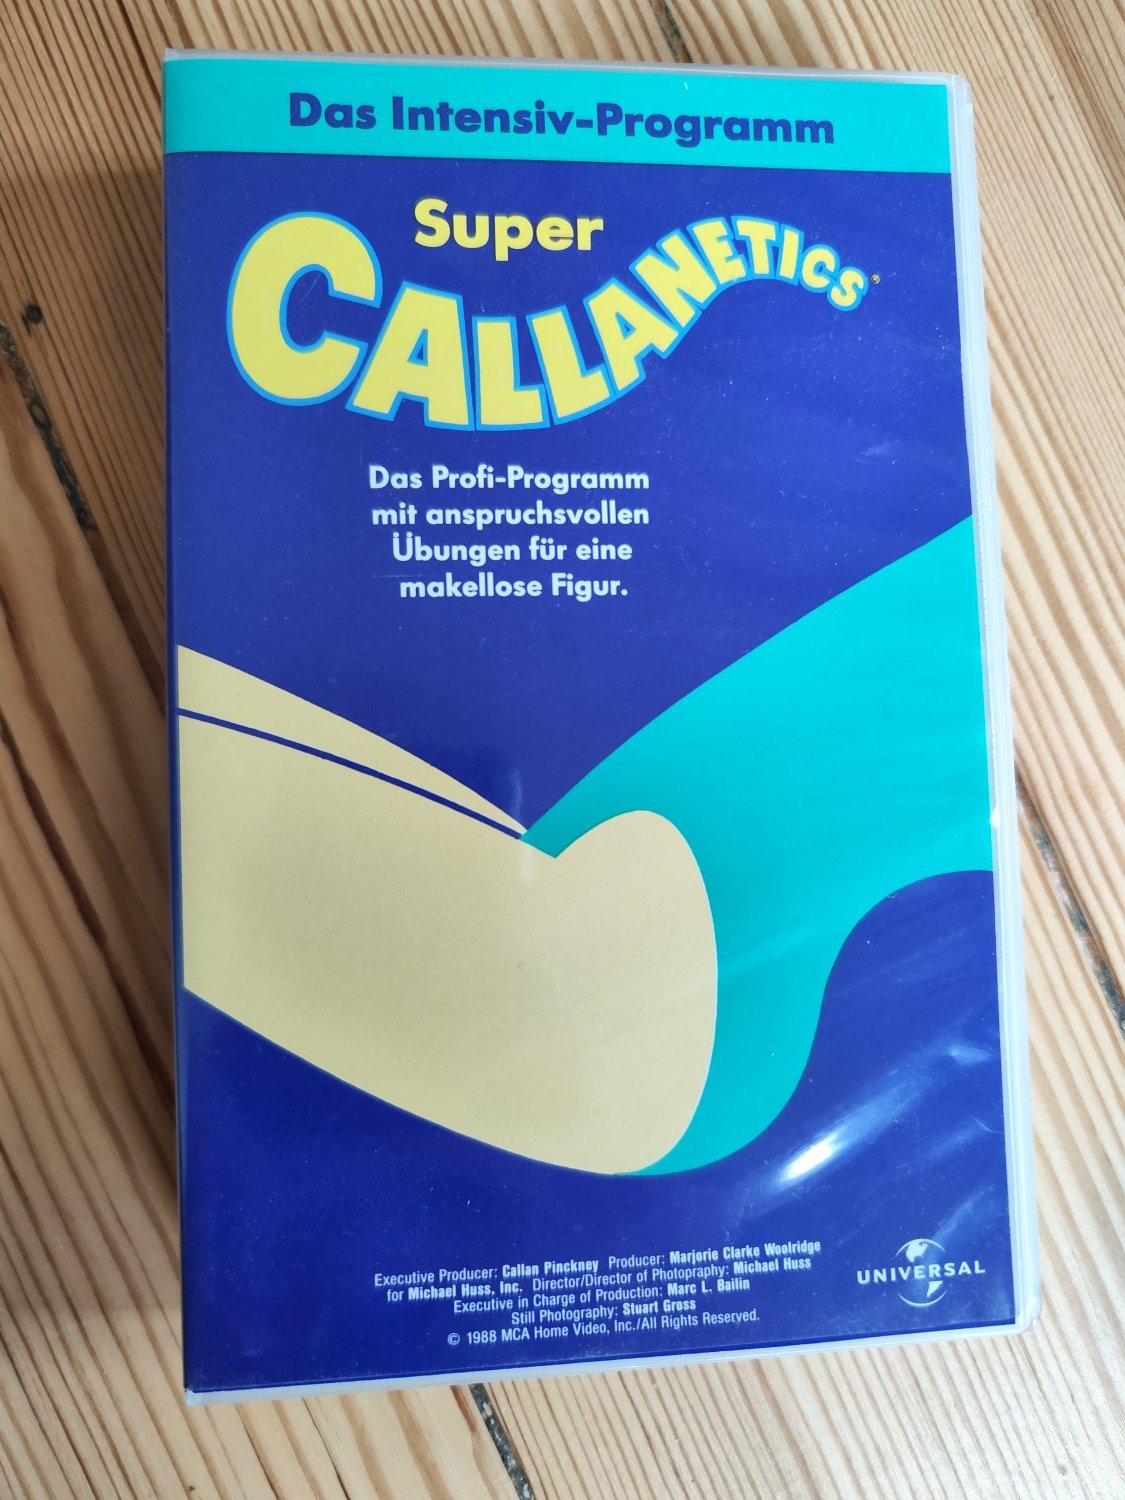 Super Callanetics DVD